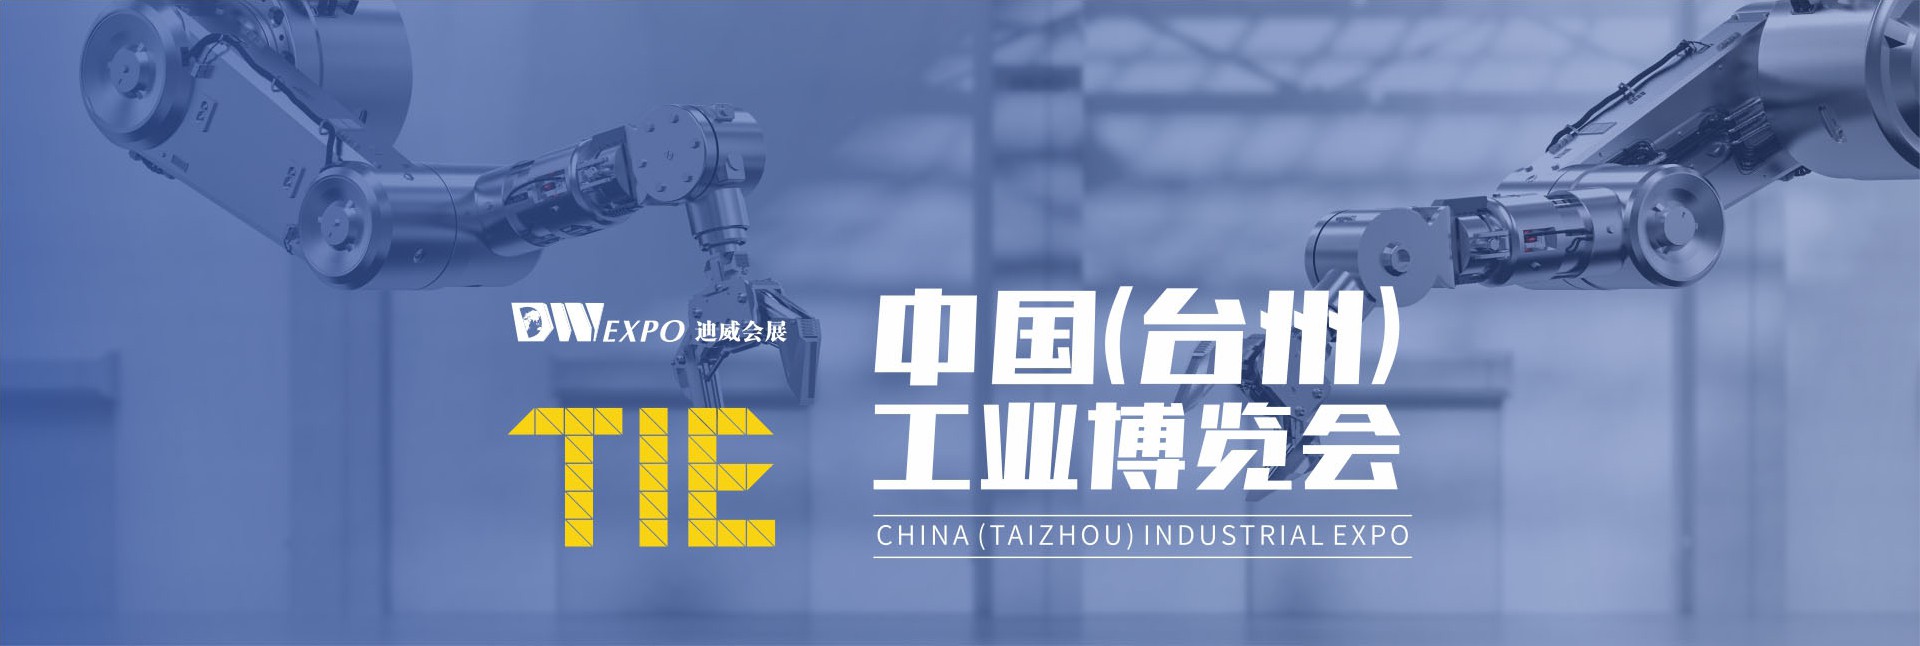 台州工业博览会